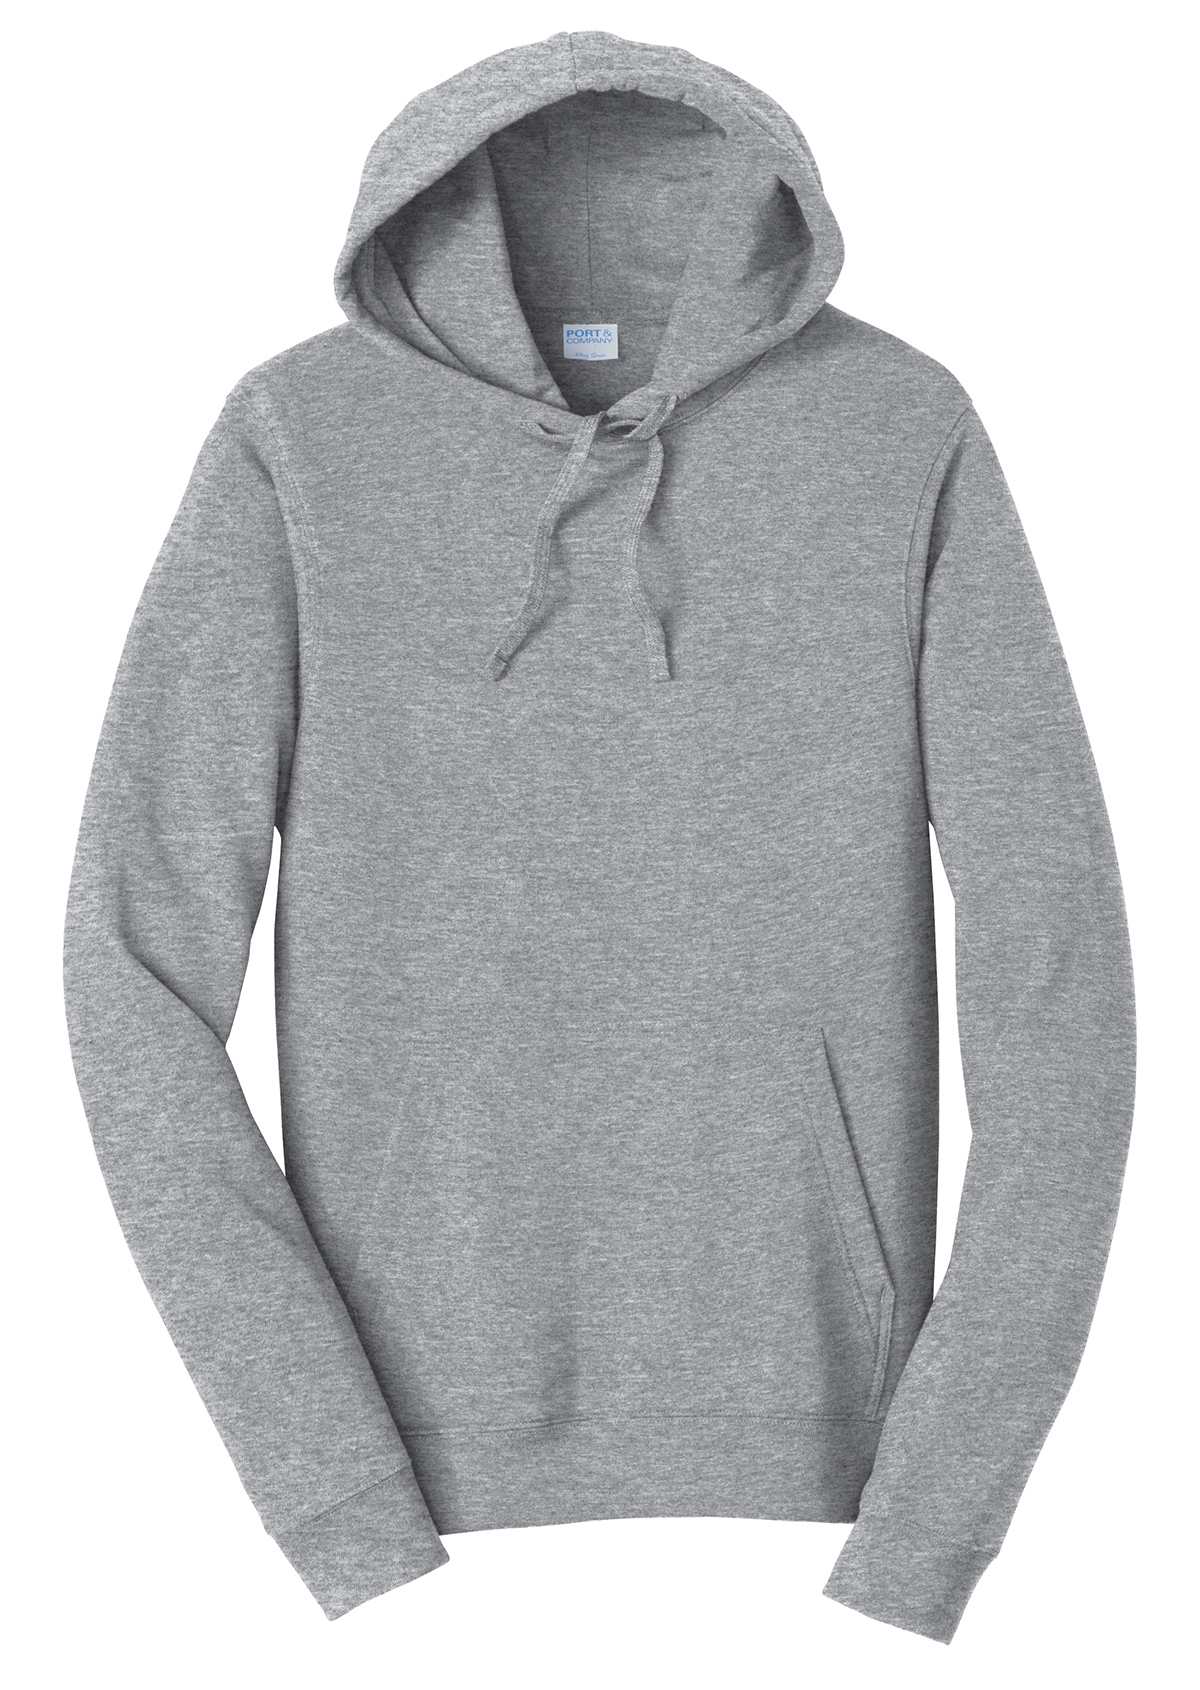 Port & Company PC850H - Fan Favorite Fleece Pullover Hooded Sweatshirt